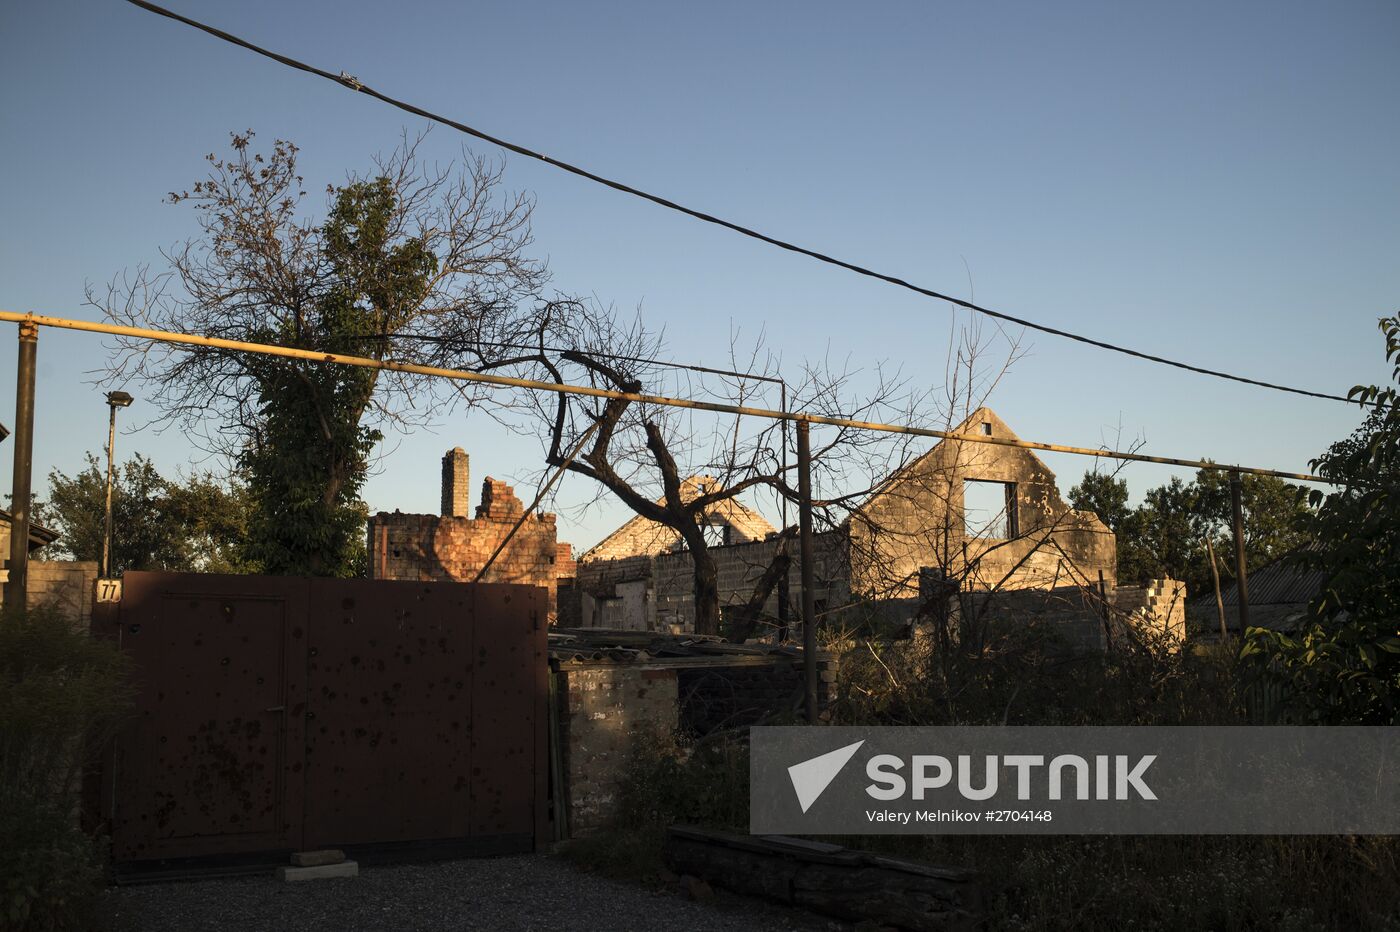 Vesyoloye village in Donetsk Region